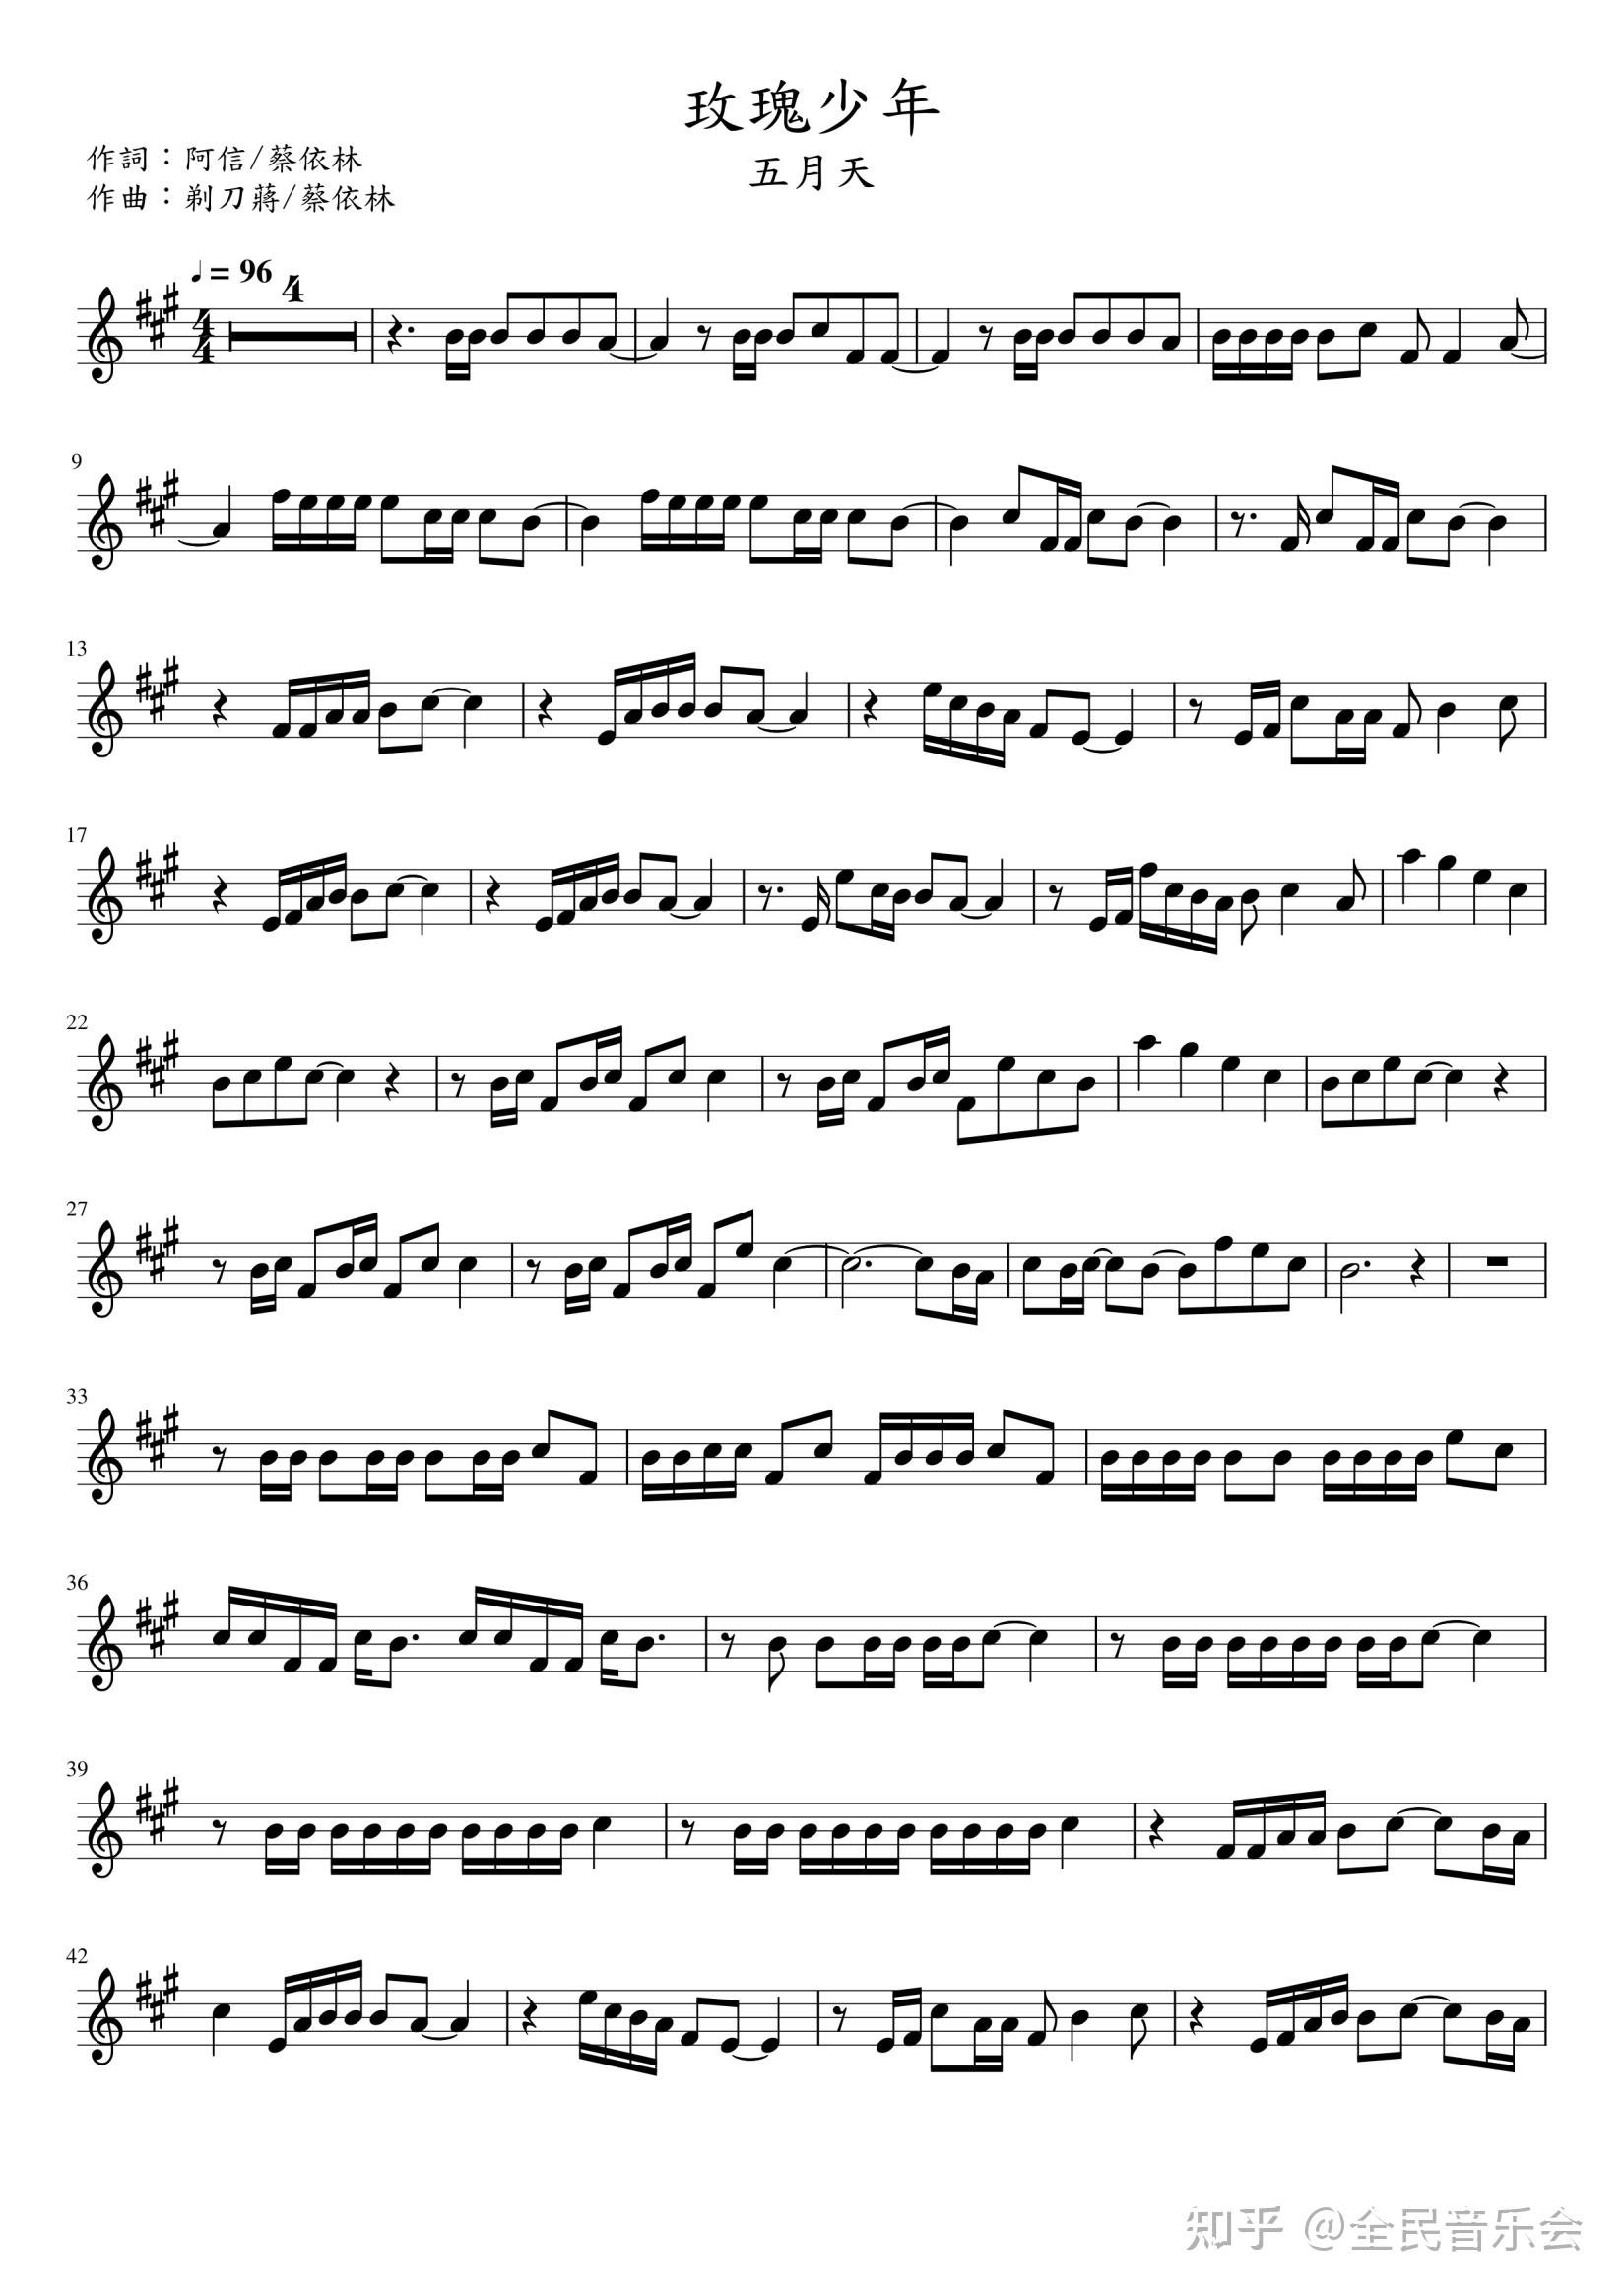 《玫瑰少年》小提琴谱完整版五线谱